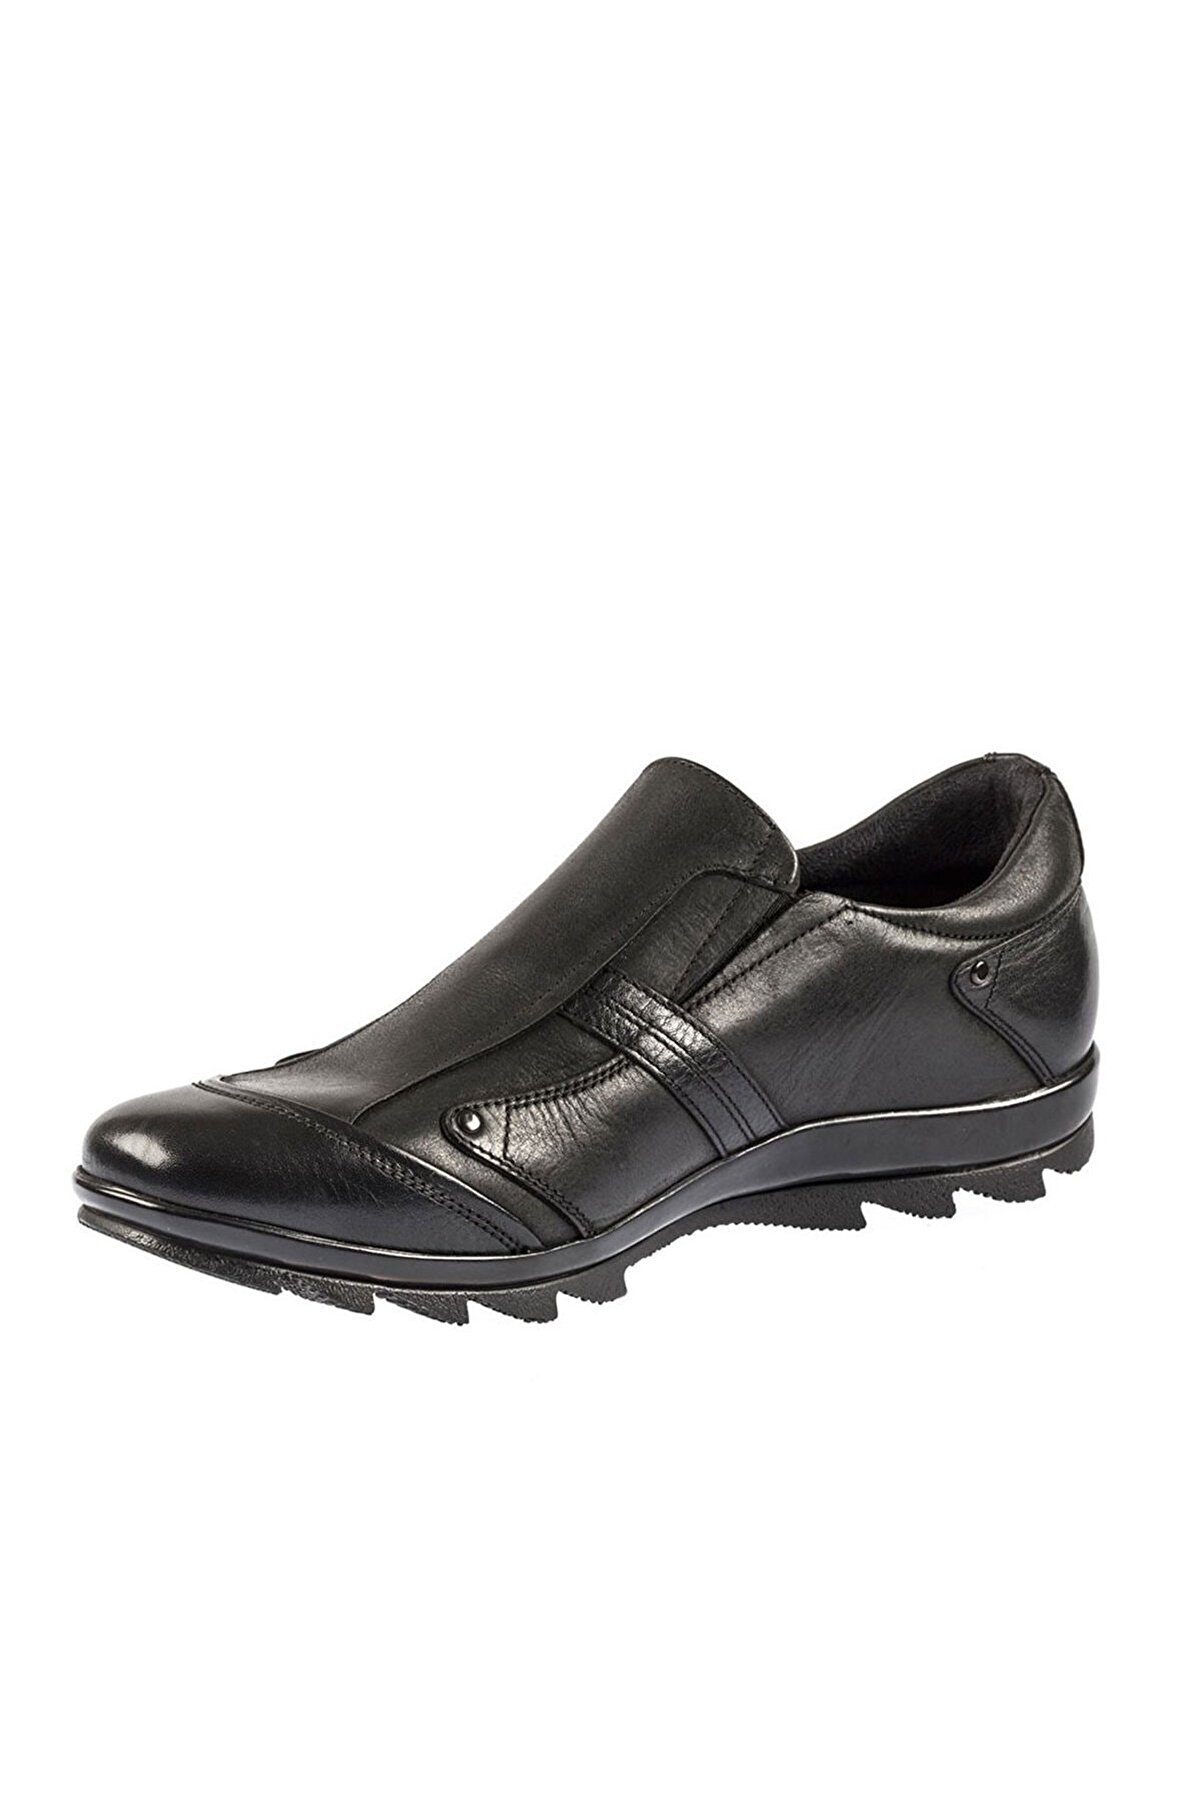 Fosco Erkek Siyah Kauçuk Taban Sıcak Astar Kışlık Ayakkabı